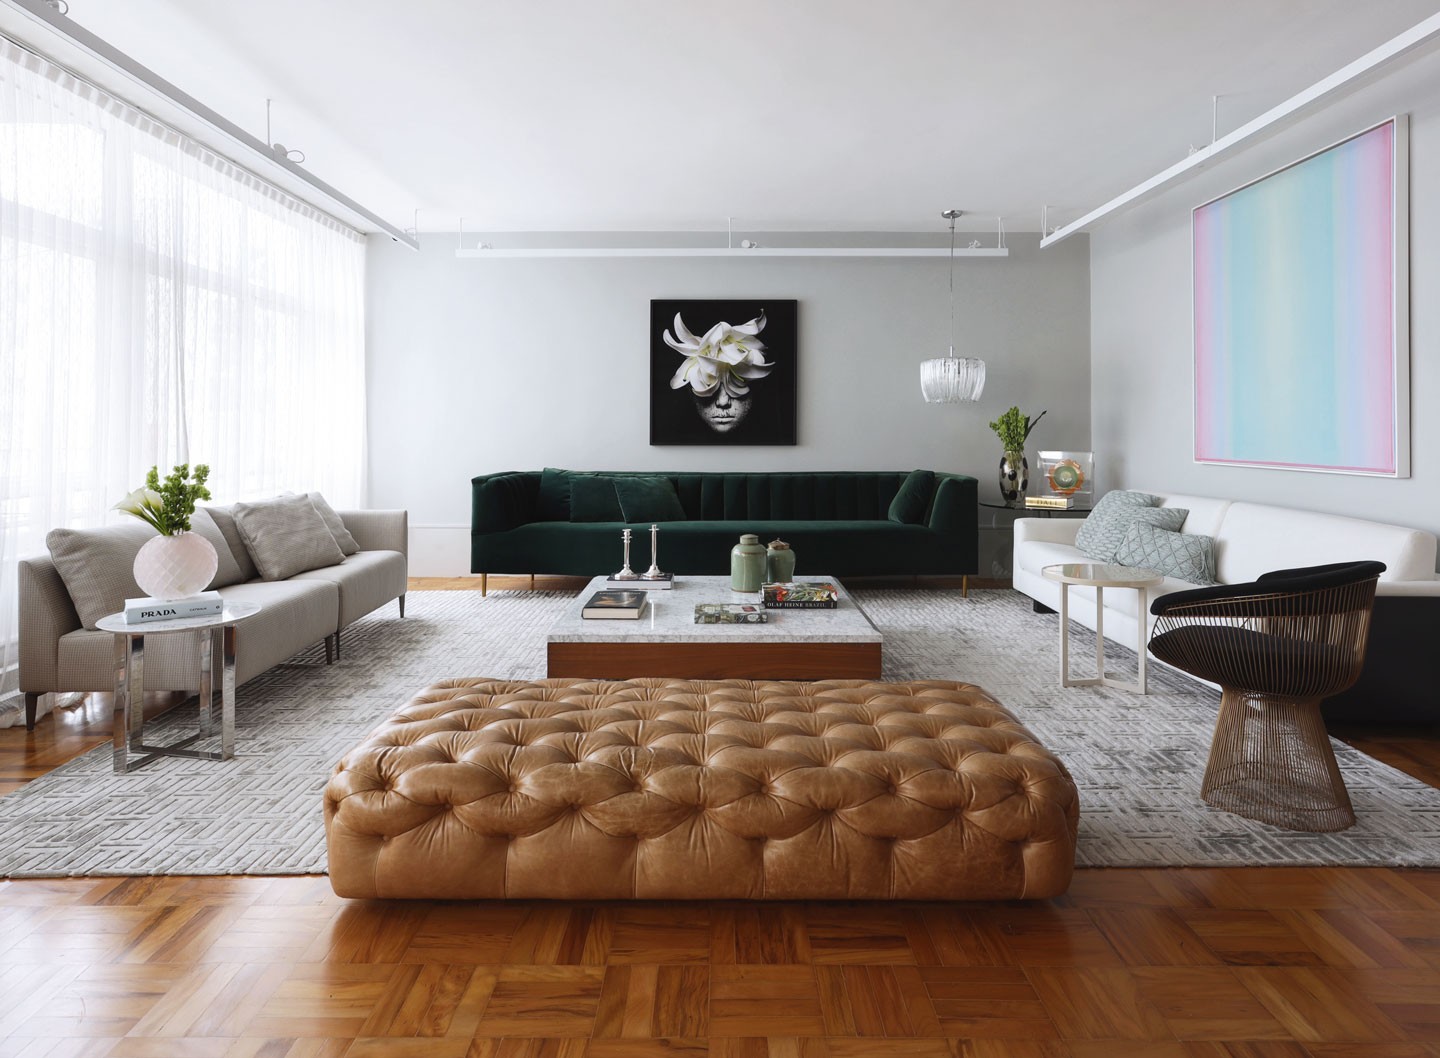 Elementos clássicos e contemporâneos convivem nesse apartamento de 300m² (Foto: Marco Antônio/divugação)